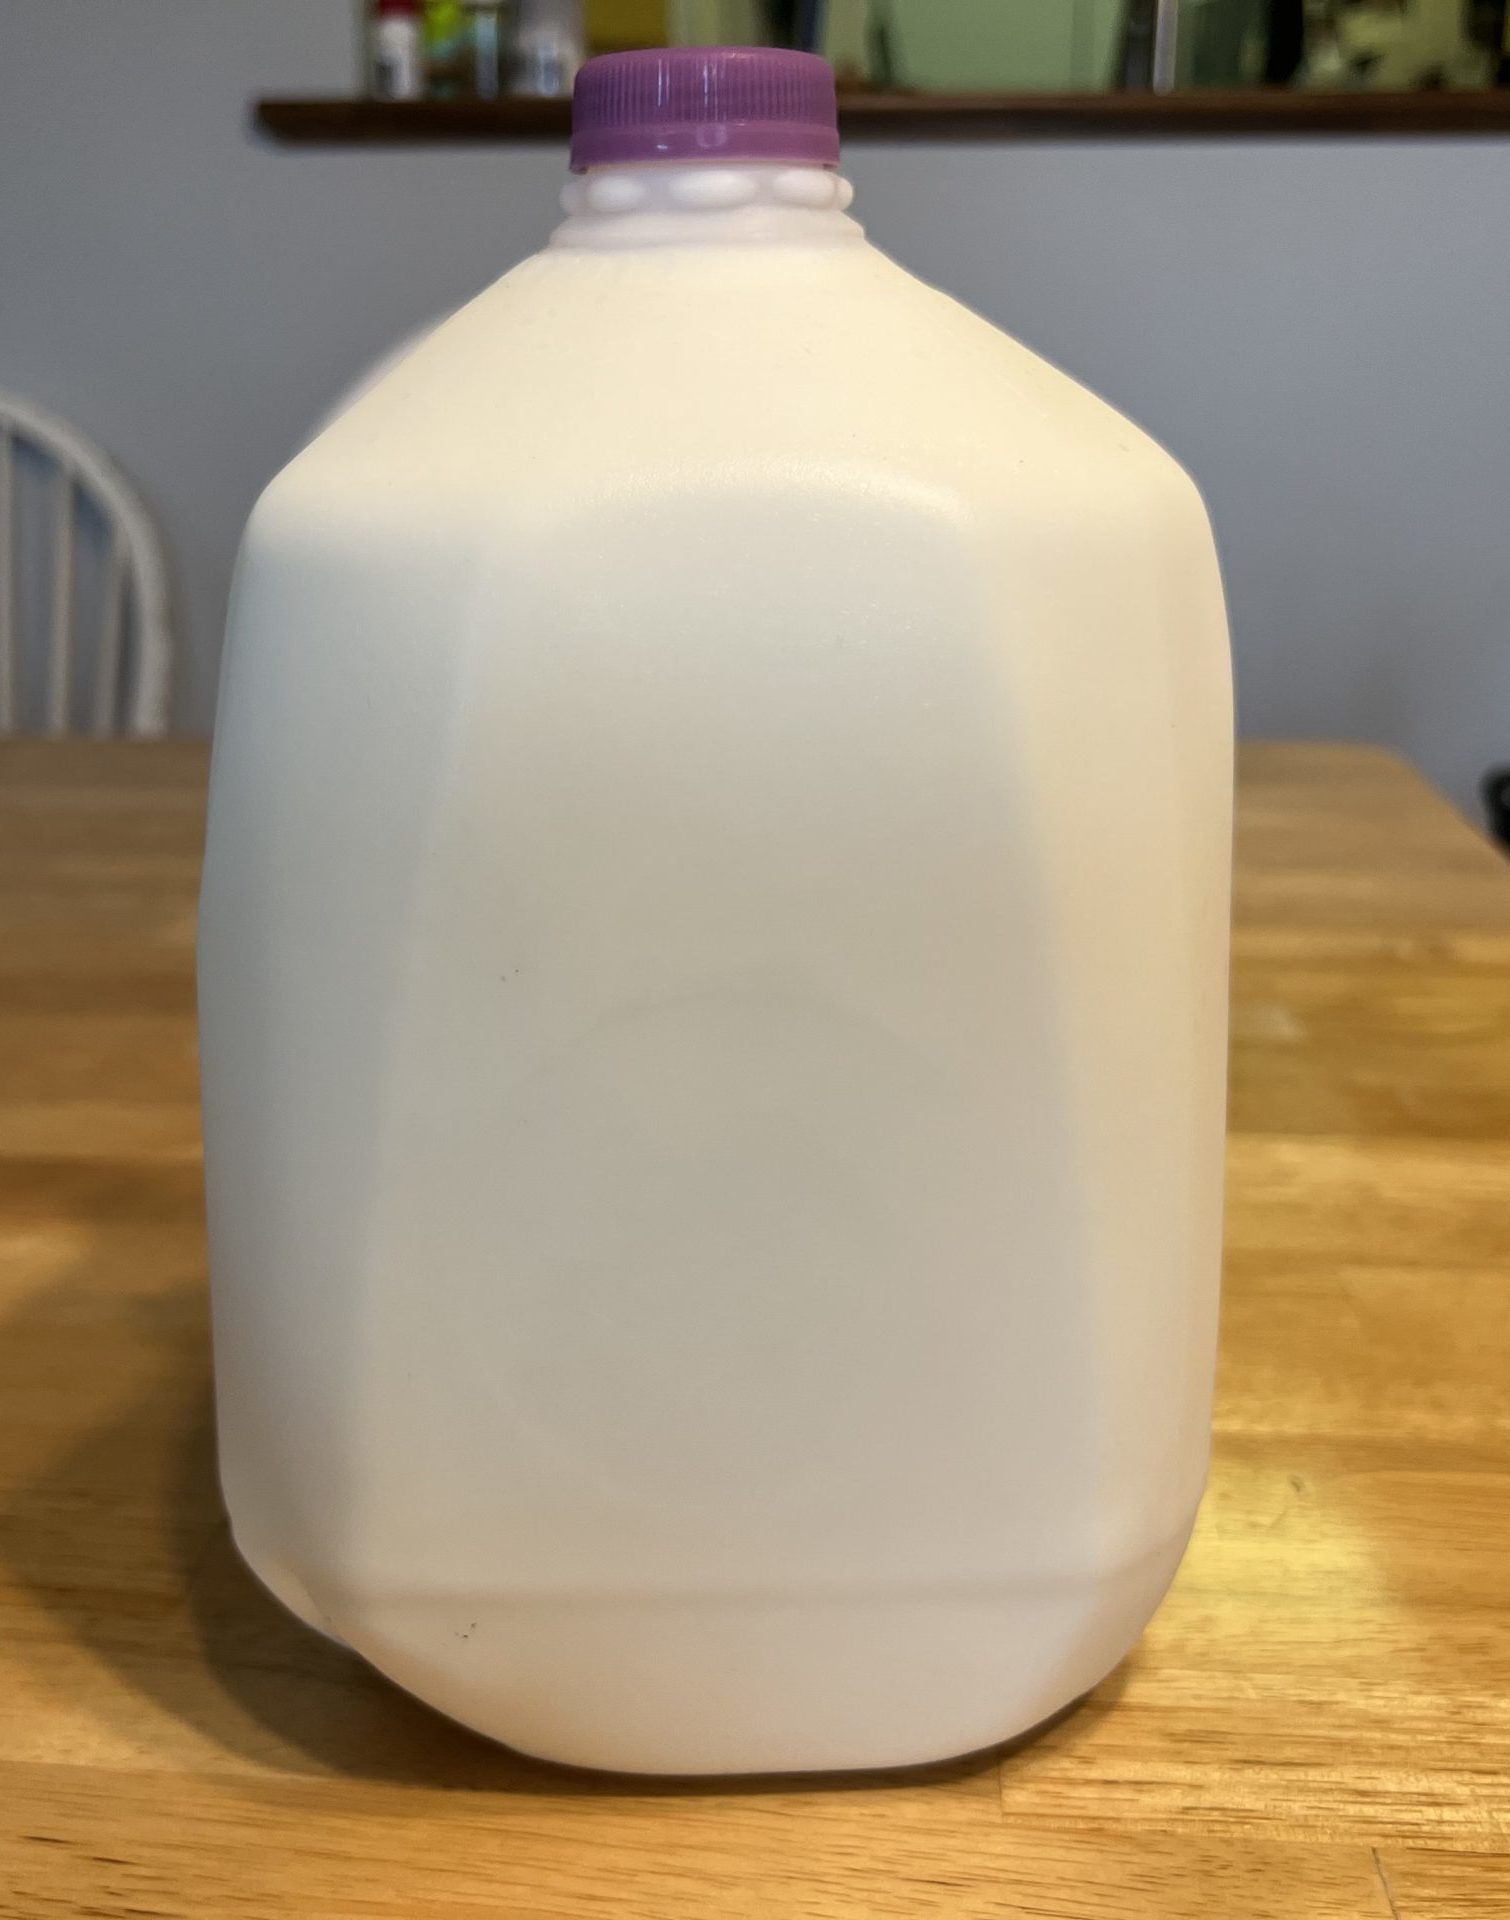 expired milk